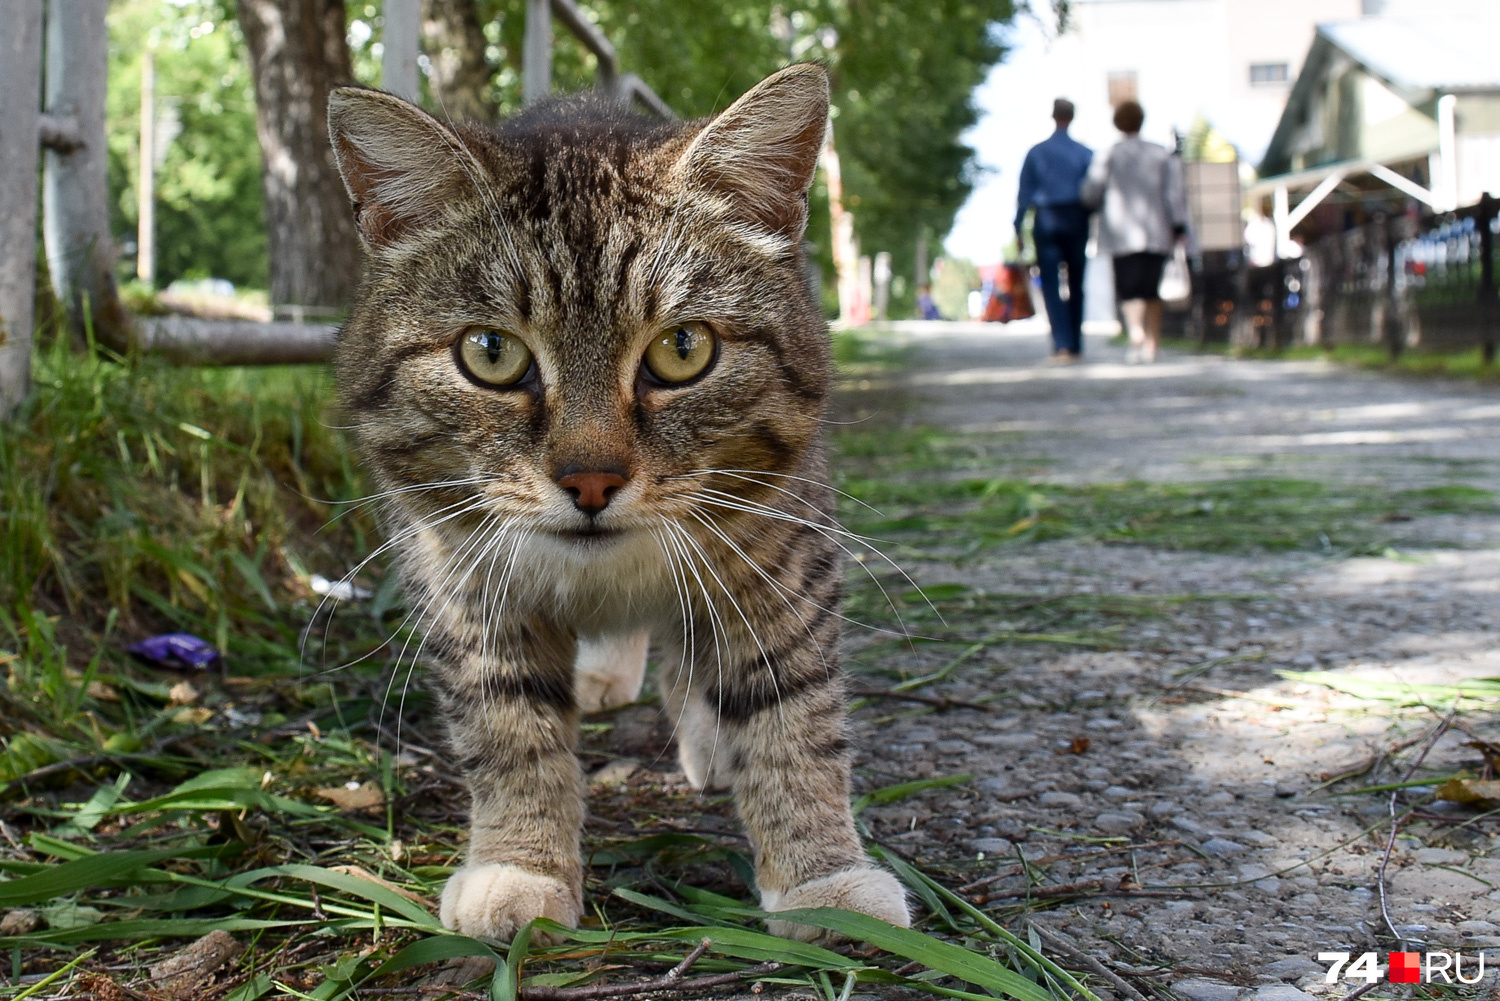 Невозмутимый уфалейский кот терпеливо переждал фотосессию и пошел дальше боцманской походкой